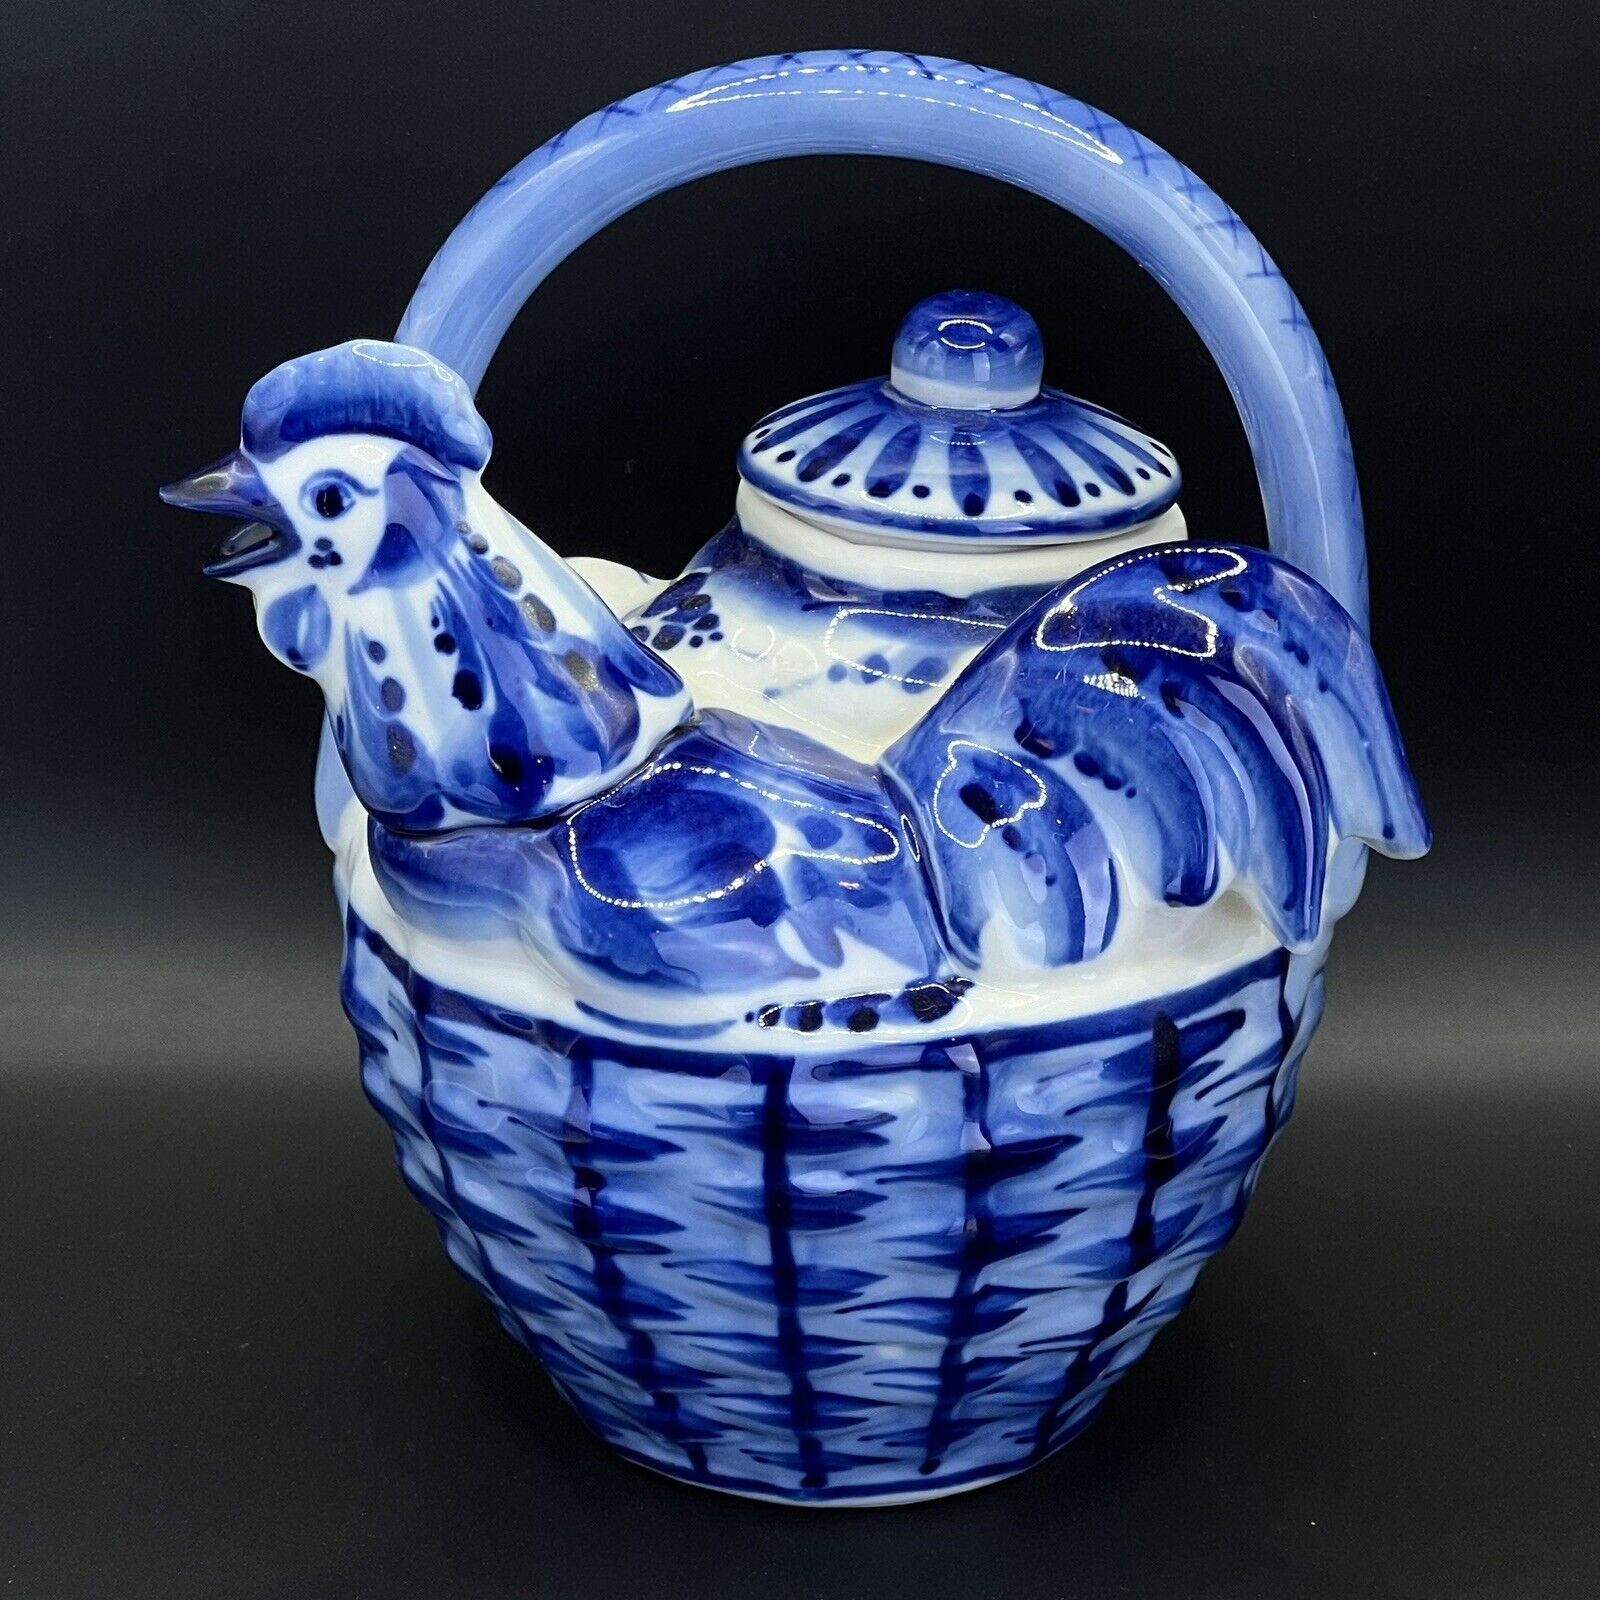 Russian Vintage 2002 Ghzel Decorative Rooster Teapot Blue White Porcelain 6\